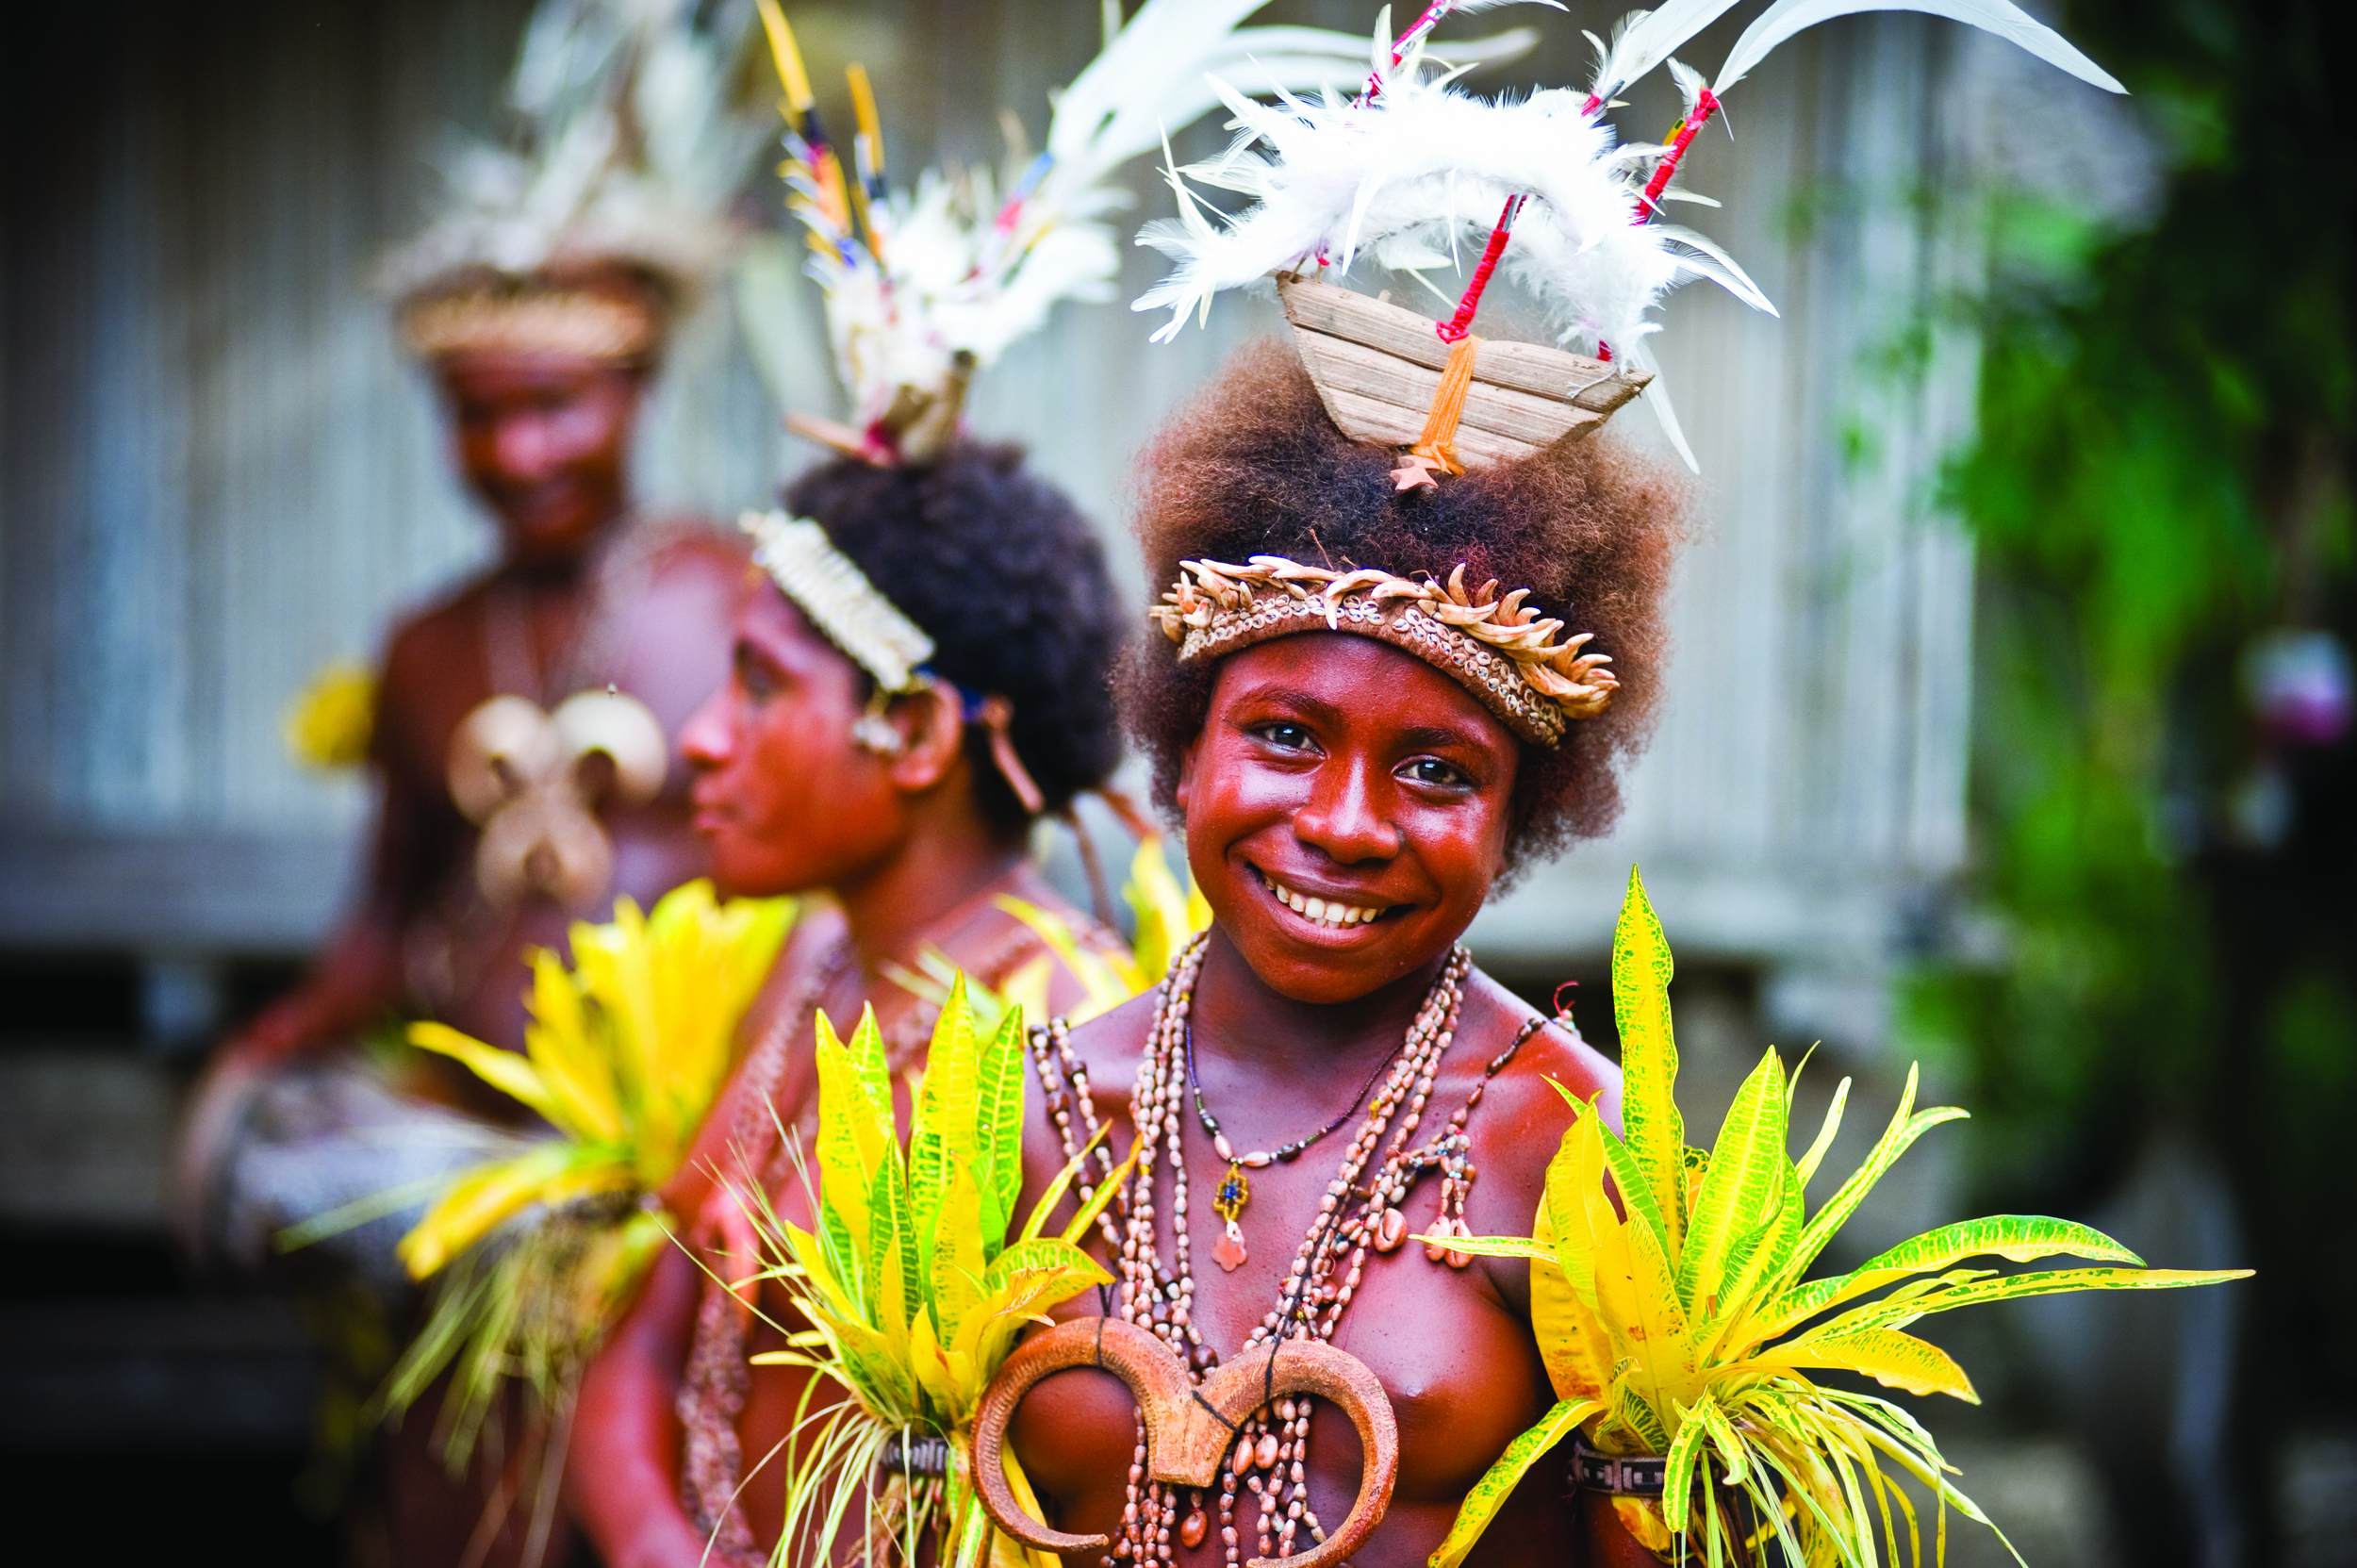  Image courtesy of David Kirkland / Papua New Guinea Tourism Promotion Authority 